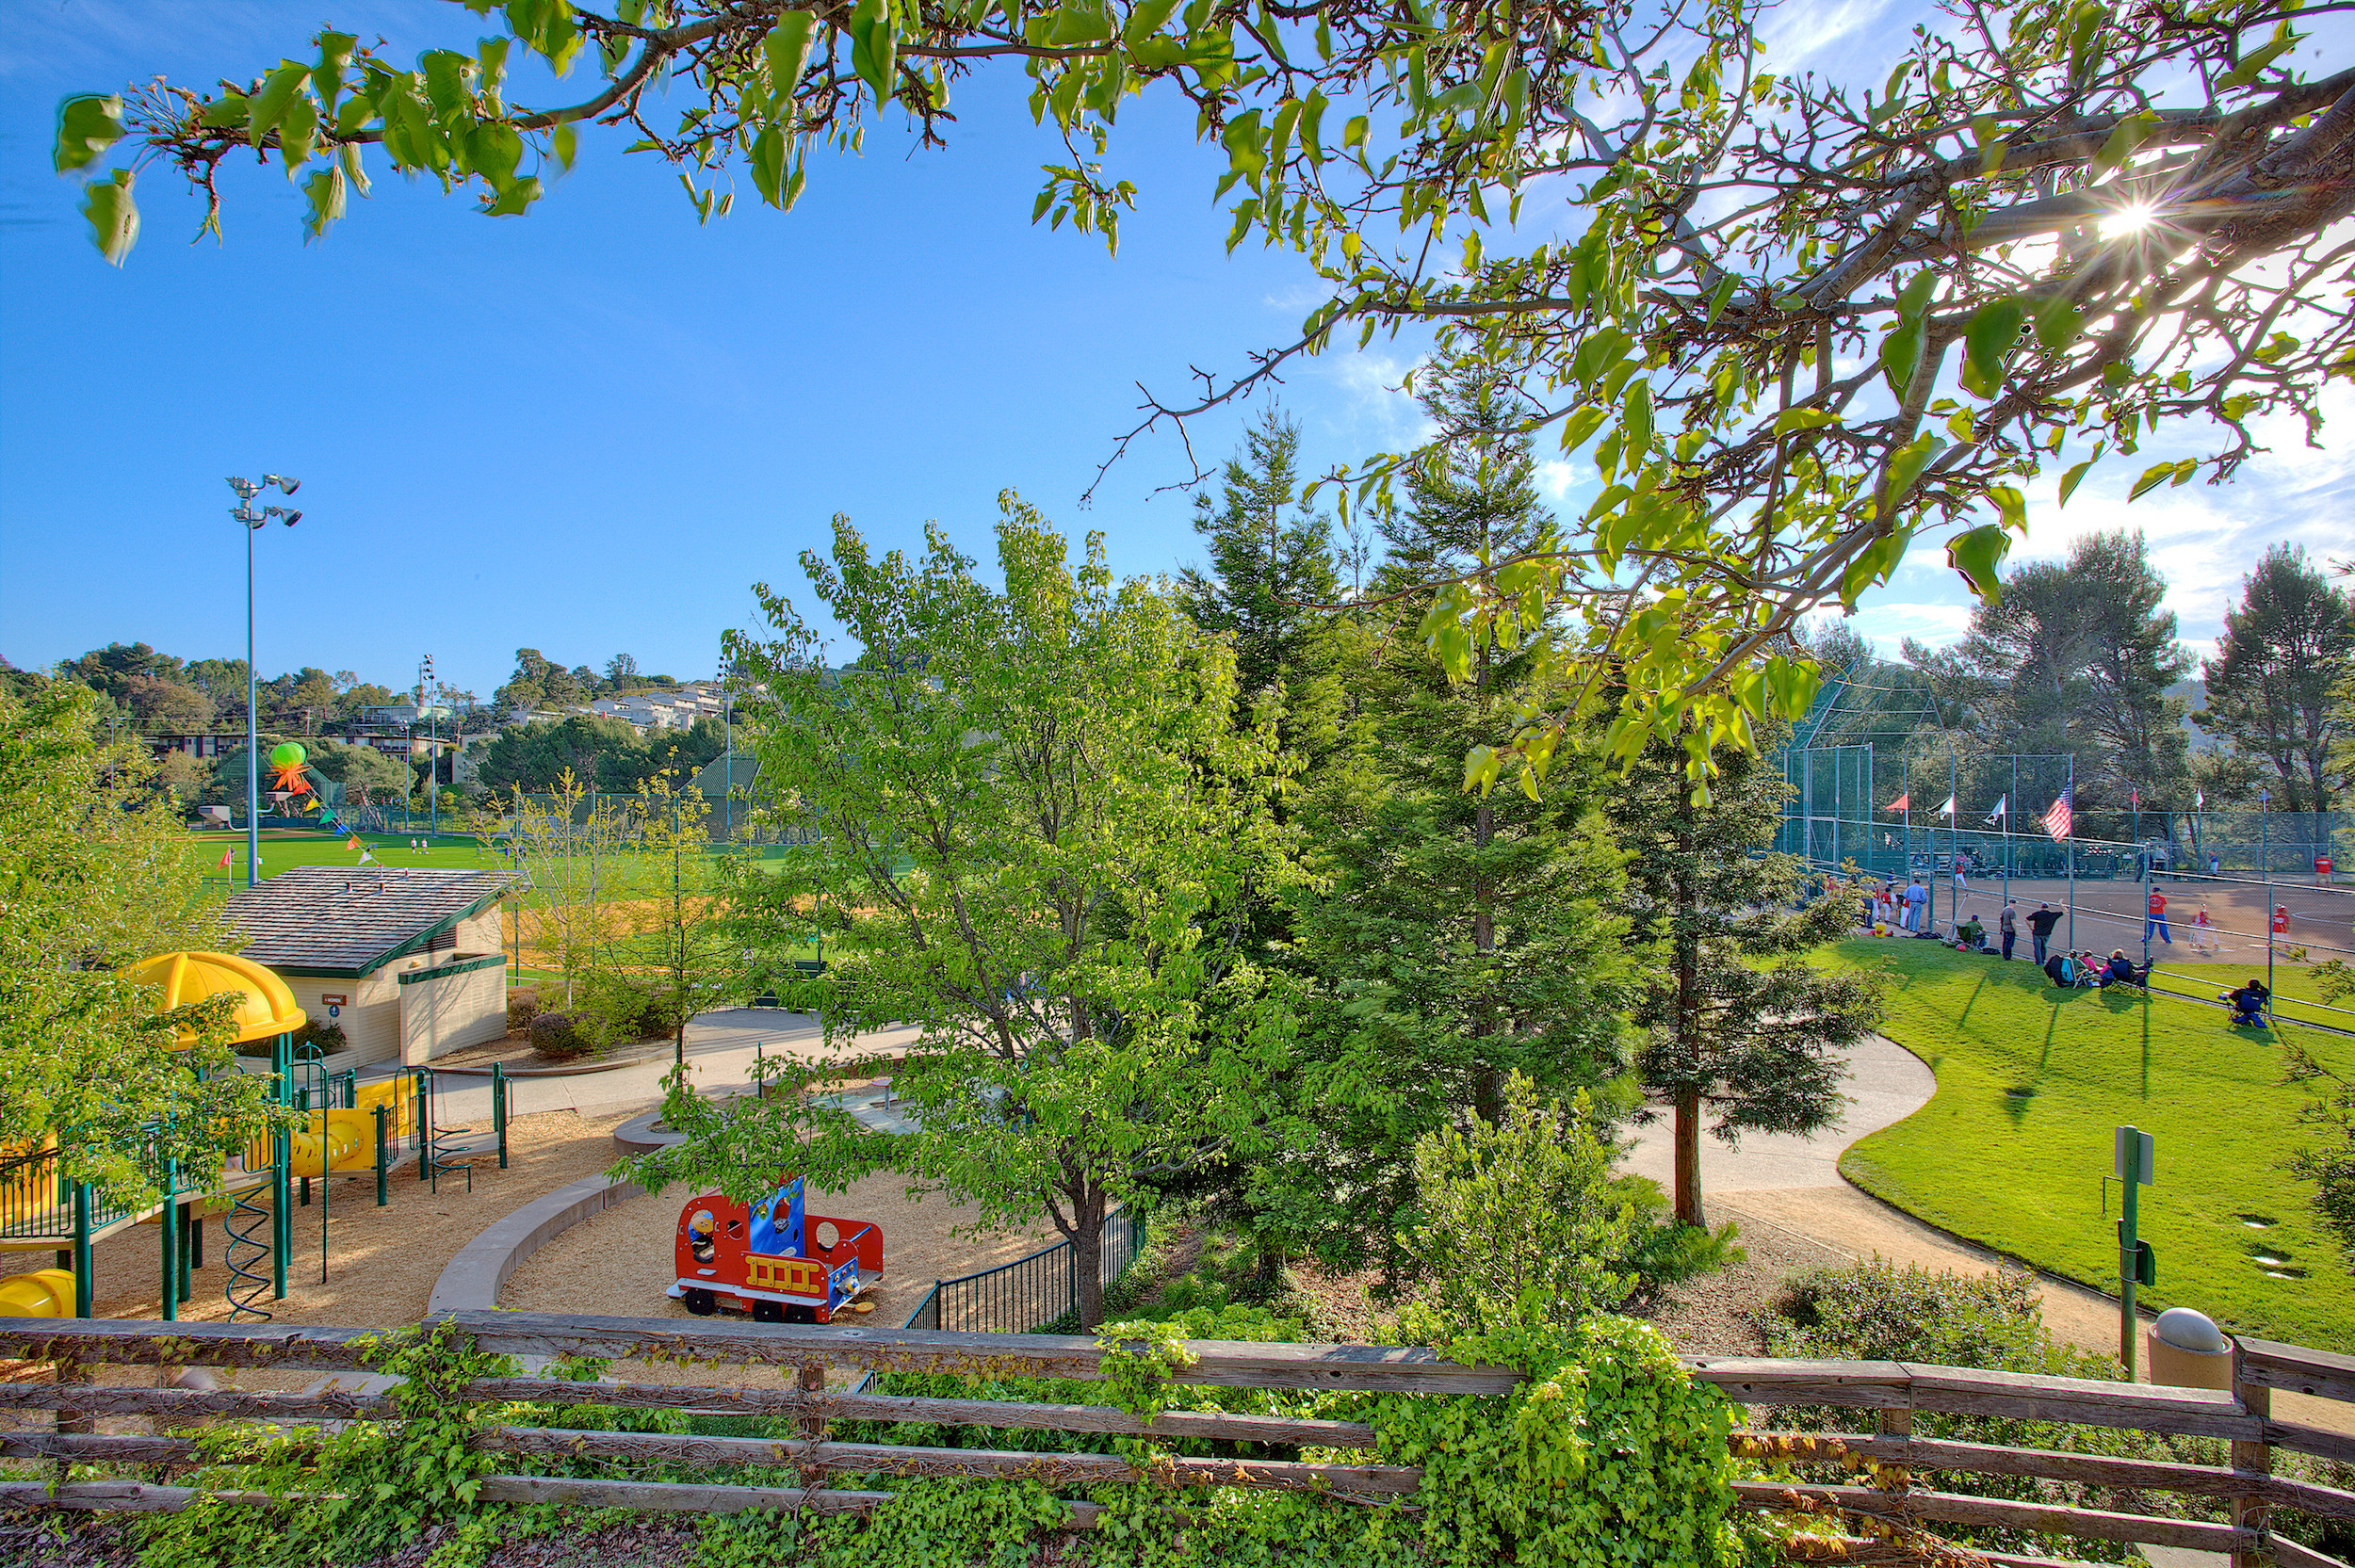 San Carlos park with playground